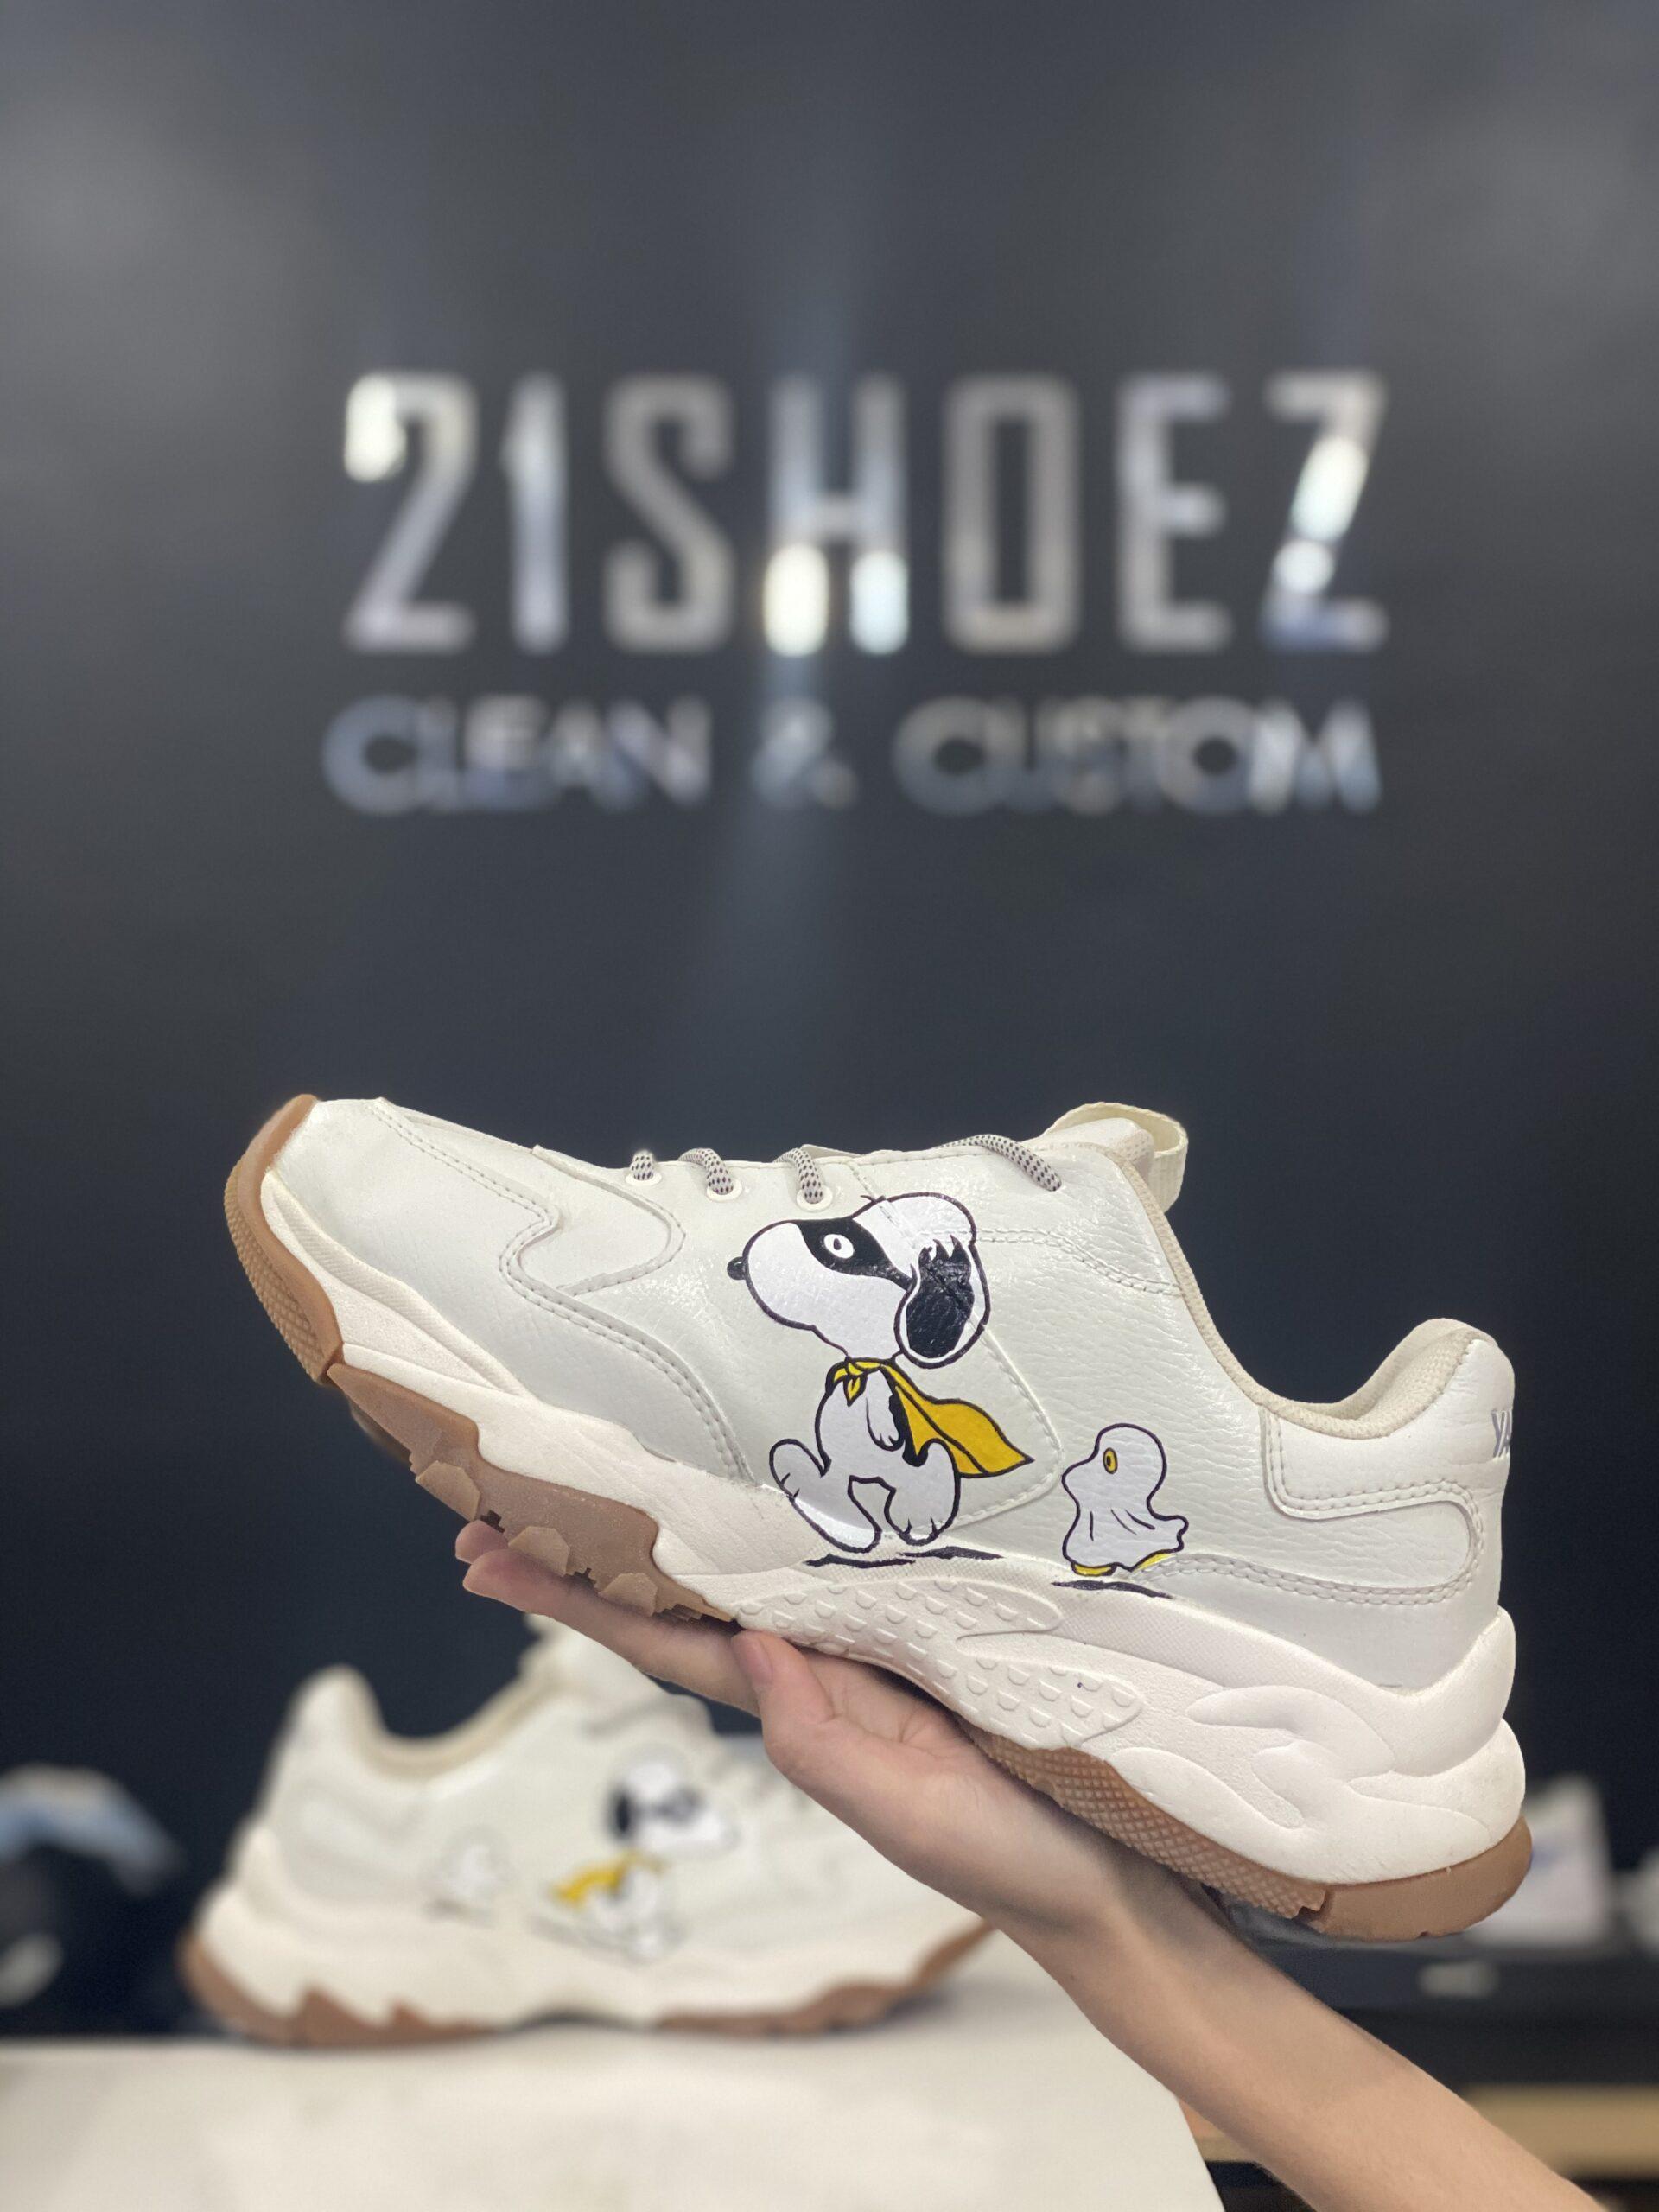 Snoopy v2MLB  Hệ thống custom giày vệ sinh giày và phục hồi giày   21SHOEZ